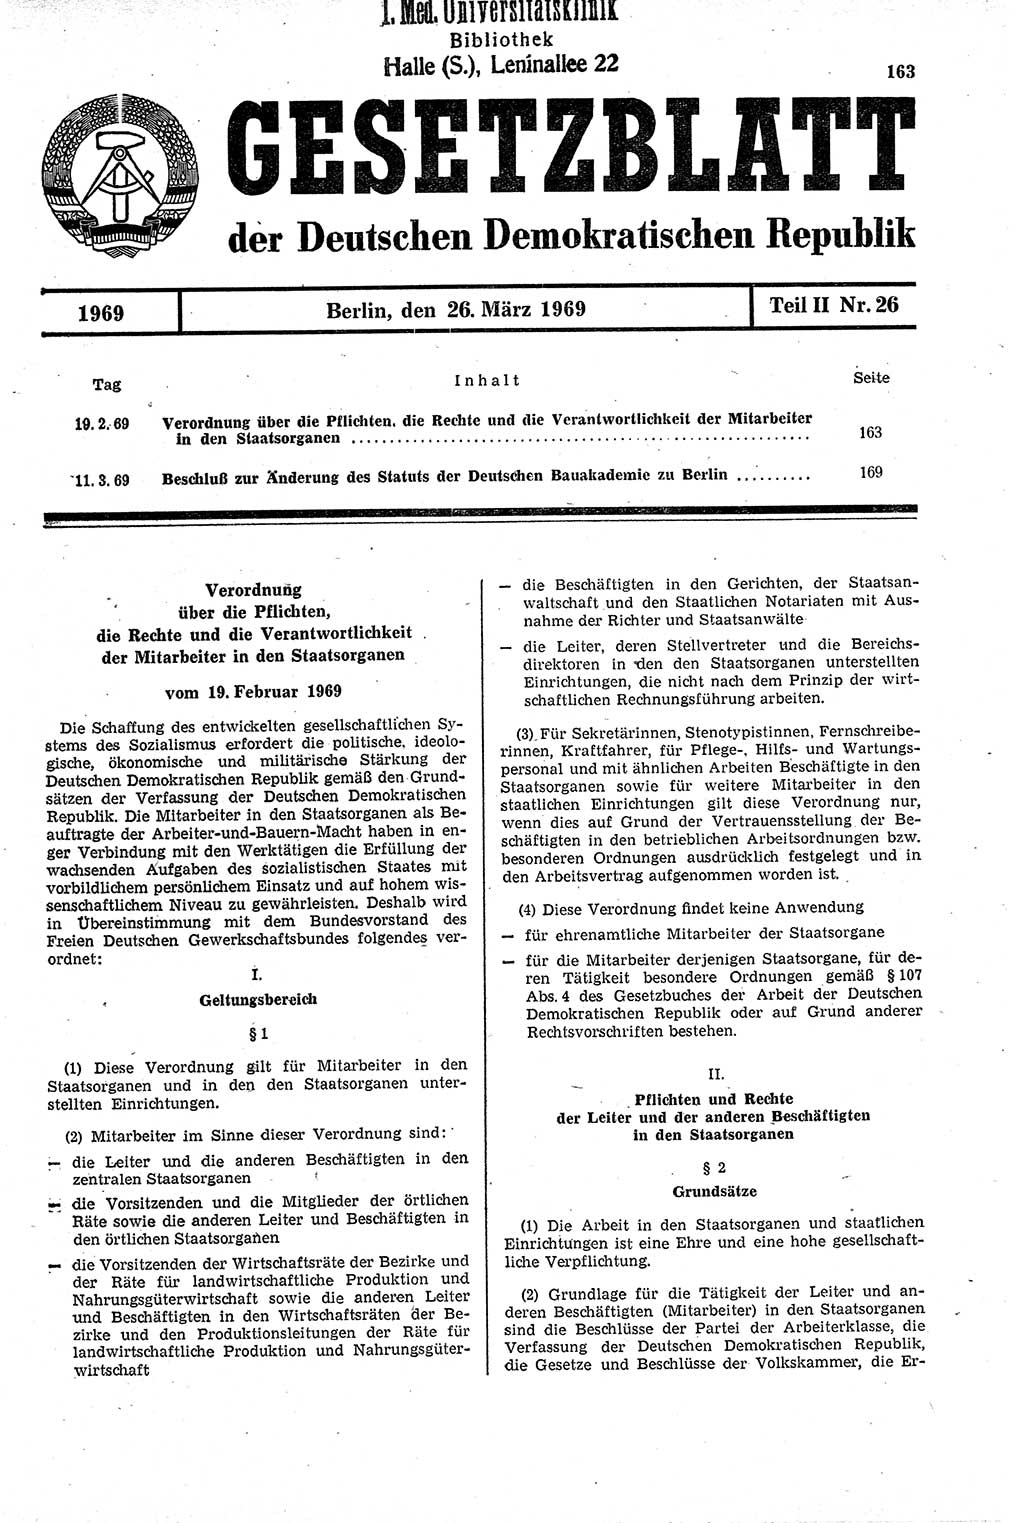 Gesetzblatt (GBl.) der Deutschen Demokratischen Republik (DDR) Teil ⅠⅠ 1969, Seite 163 (GBl. DDR ⅠⅠ 1969, S. 163)